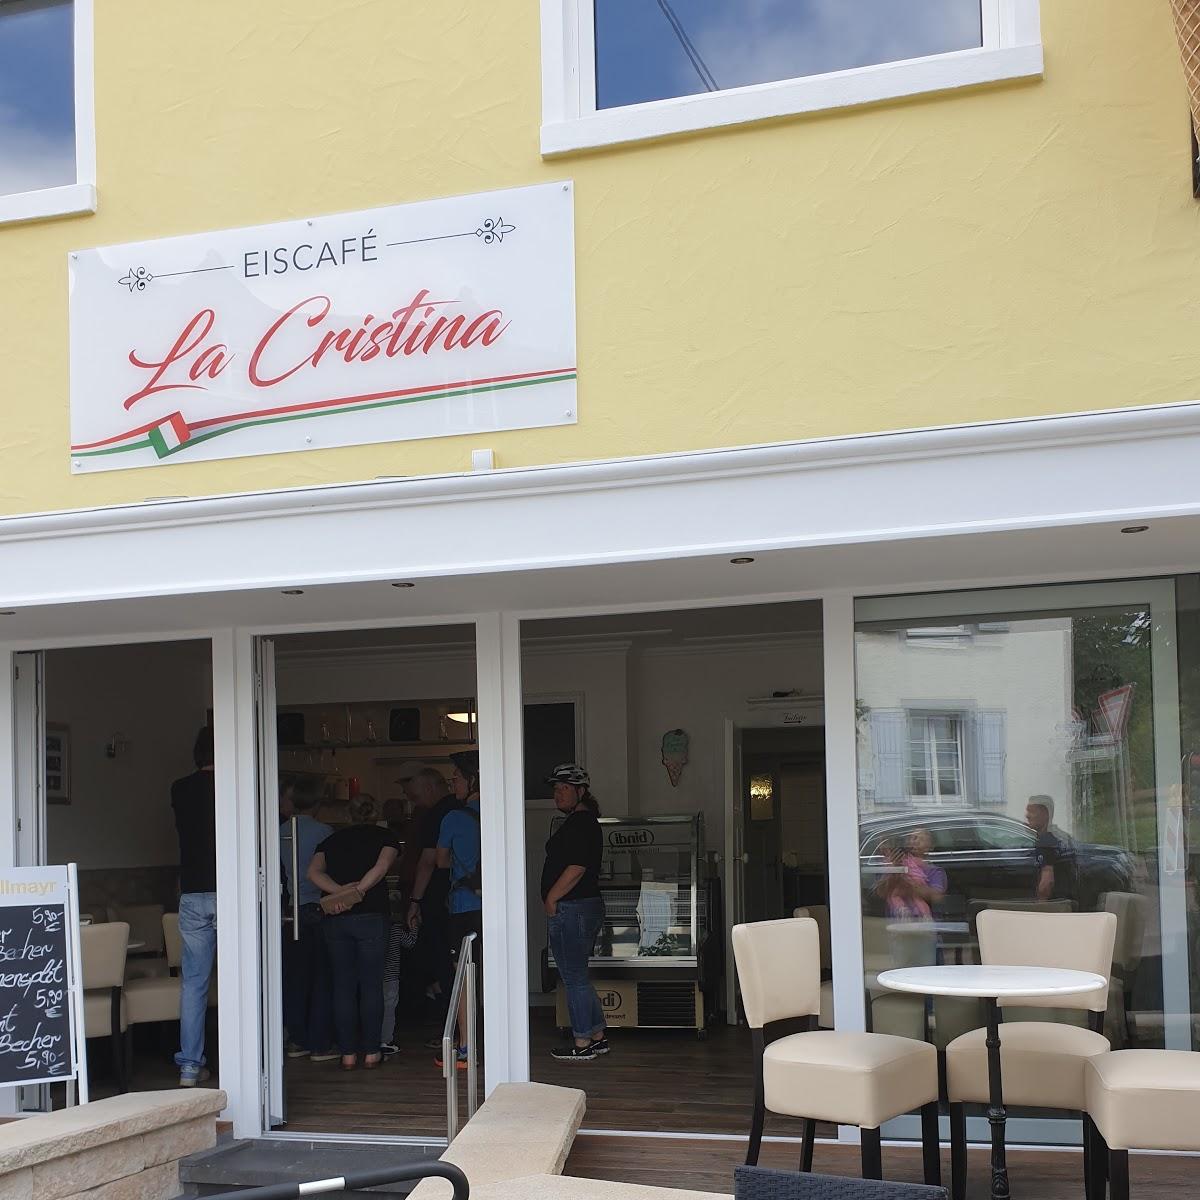 Restaurant "Eiscafé La Cristina" in Schalkenmehren